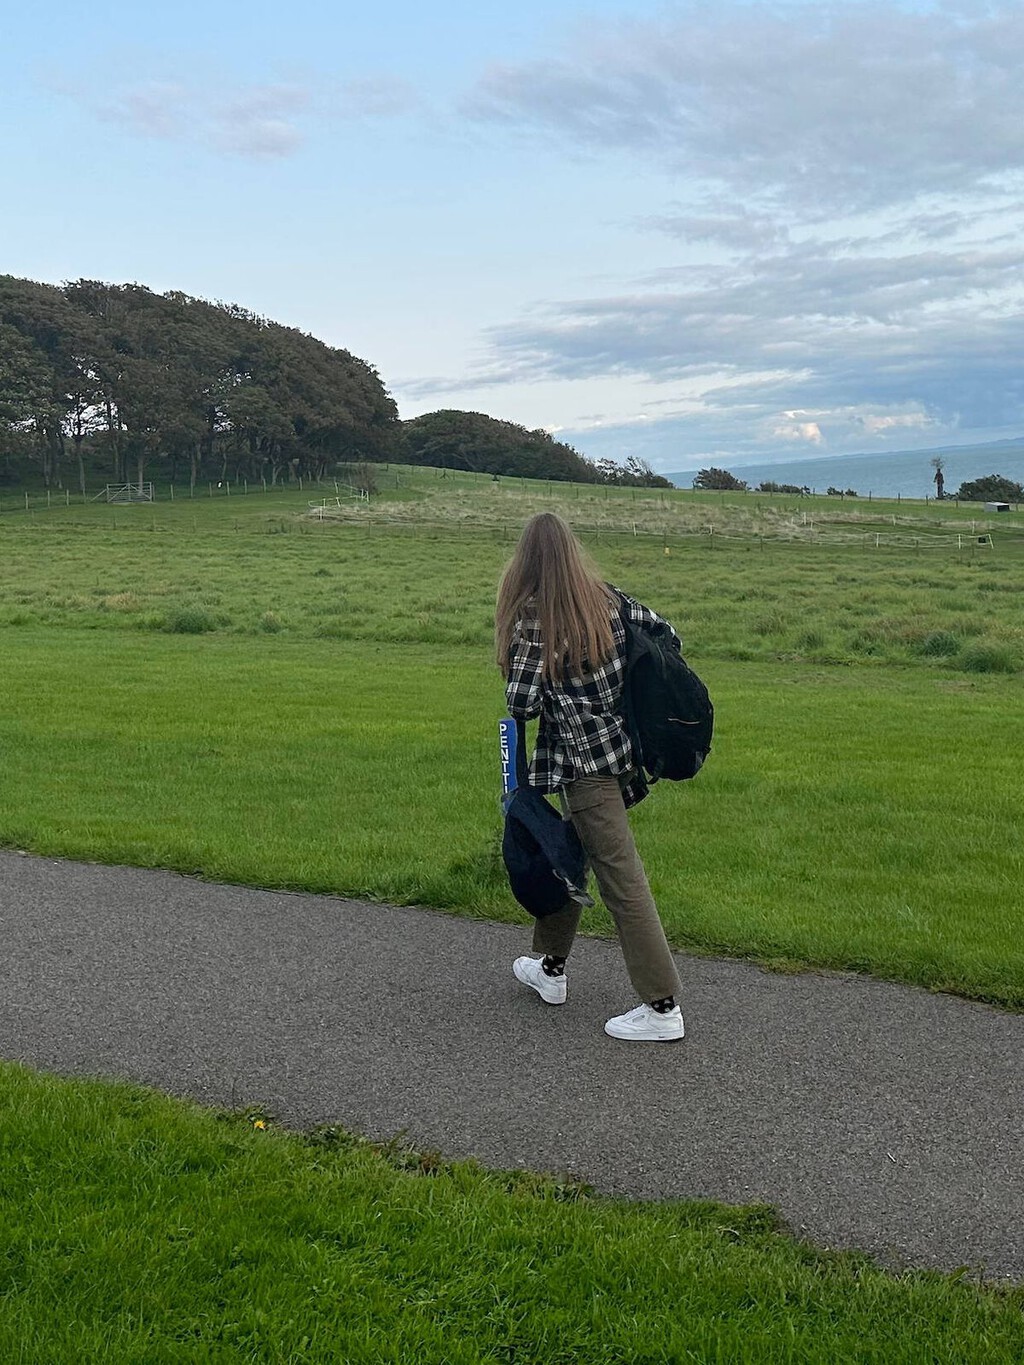 Reciben a la infanta Sofía con una cacerolada al llegar a Gales: el motivo